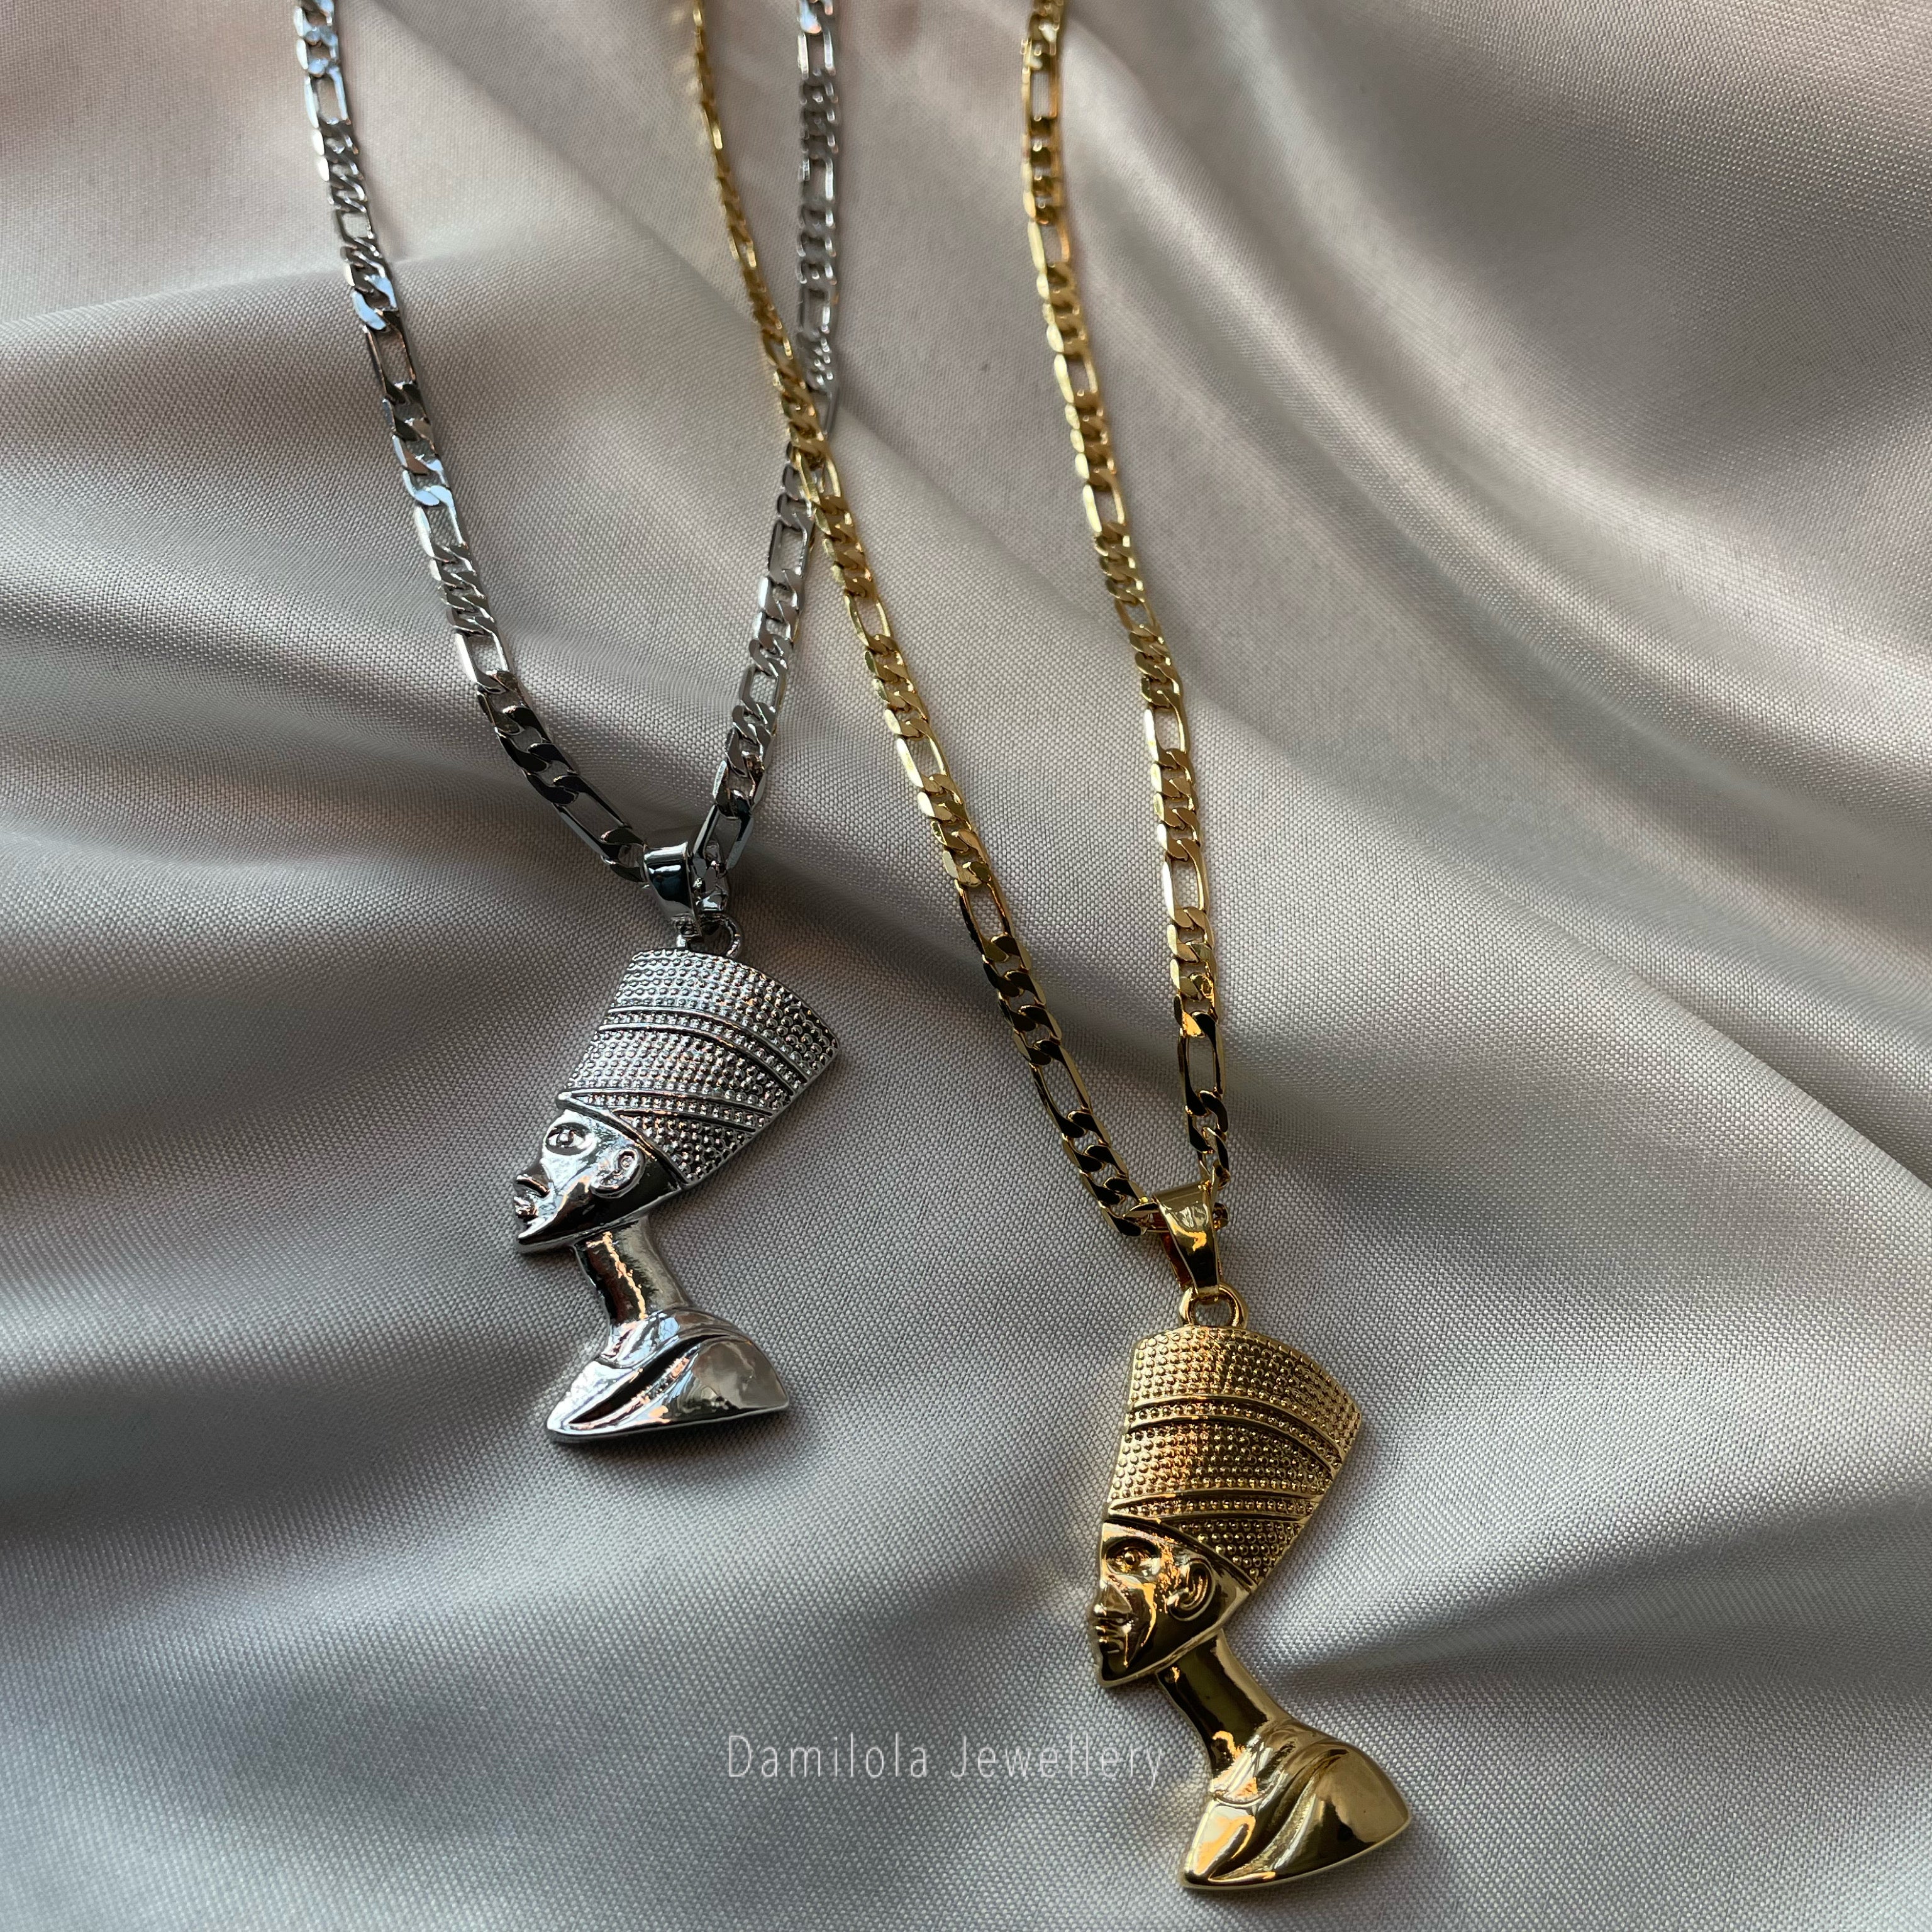 Queen Nefertiti necklace Gold/Silver